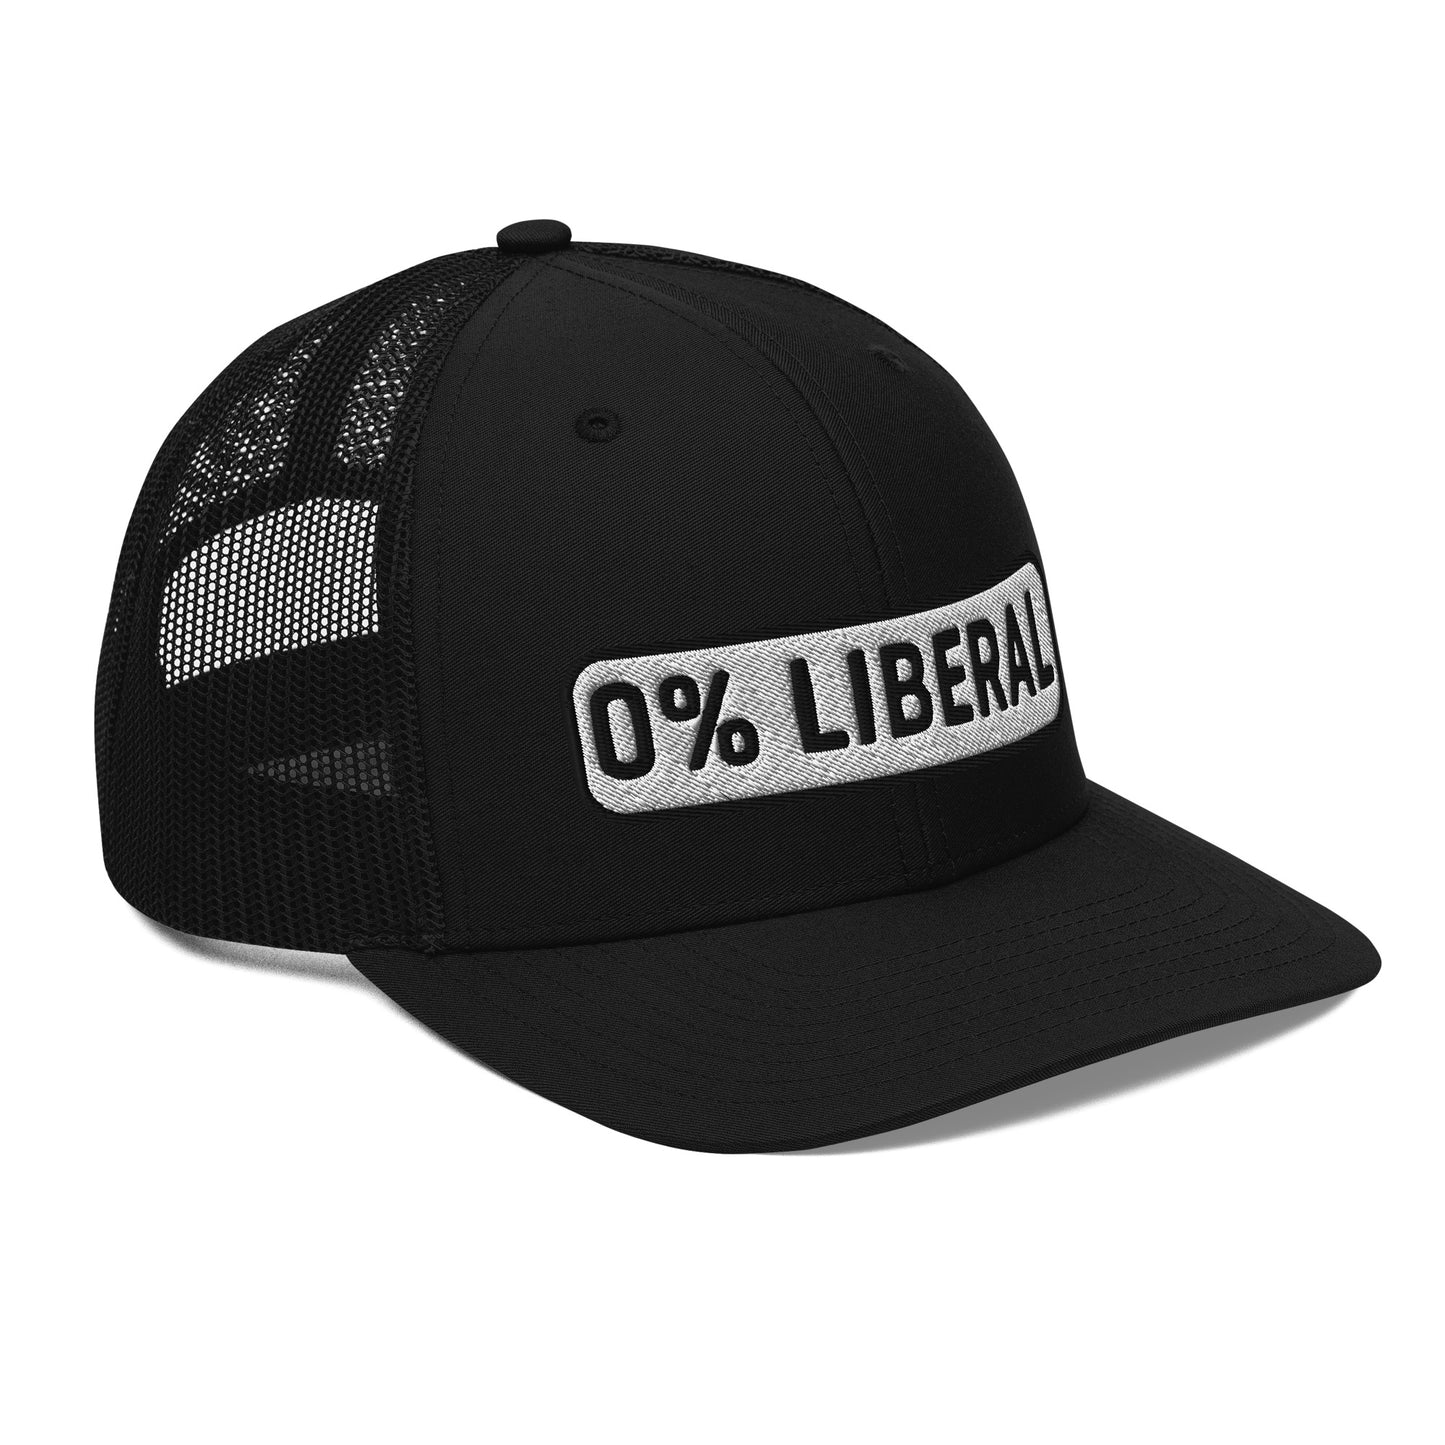 0% Liberal Percent Trucker Cap